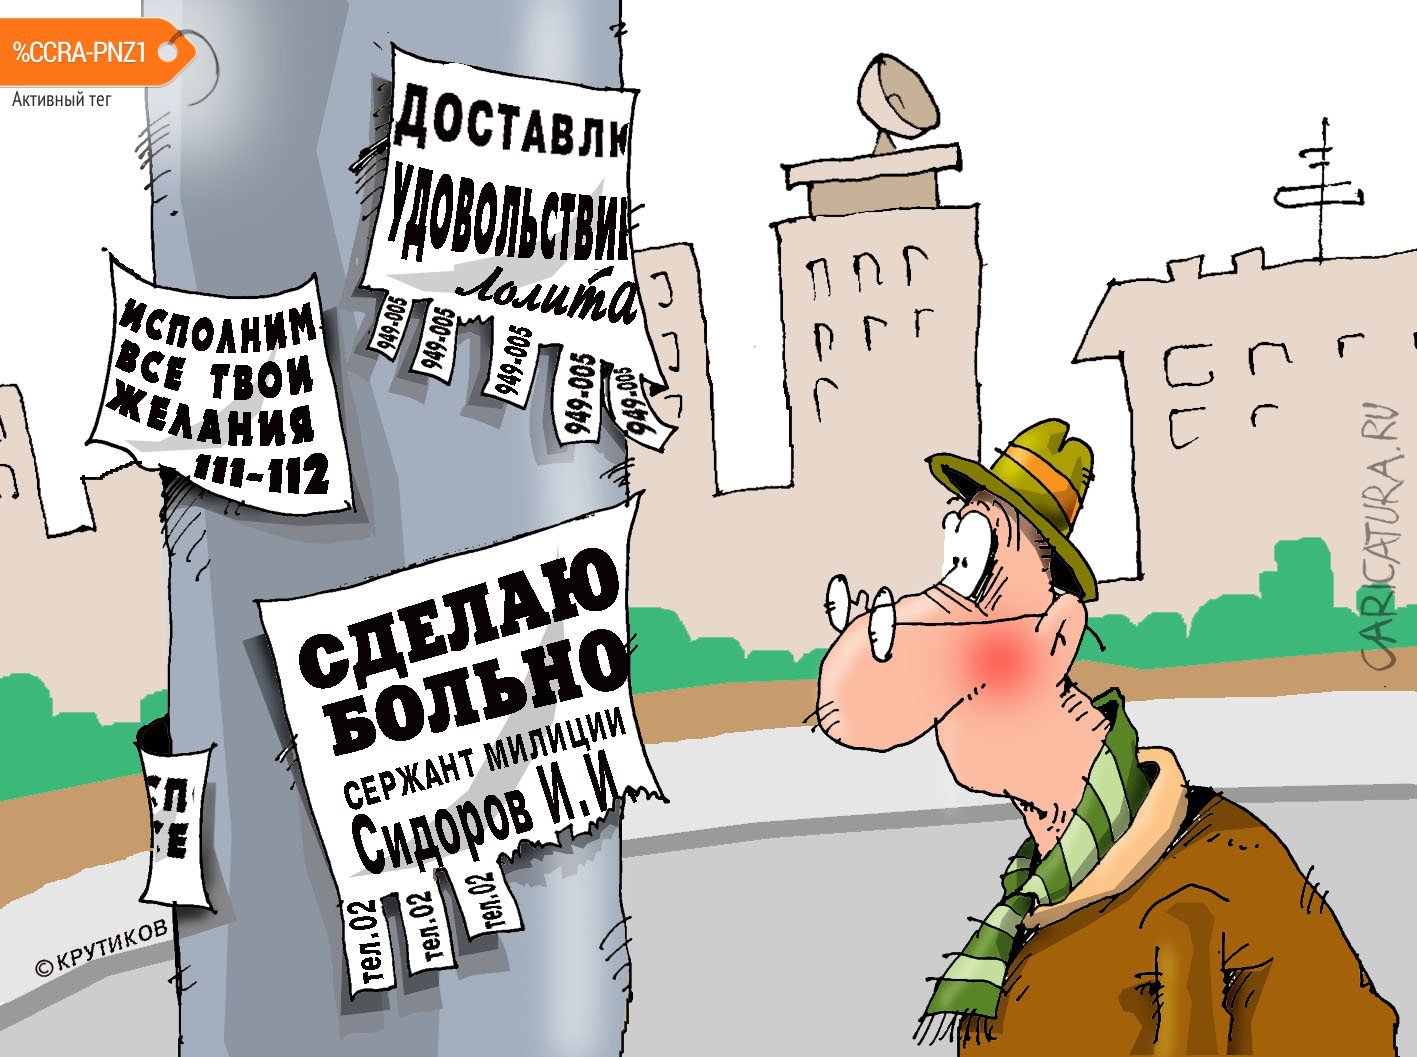 Карикатура "Сделаю больно", Николай Крутиков